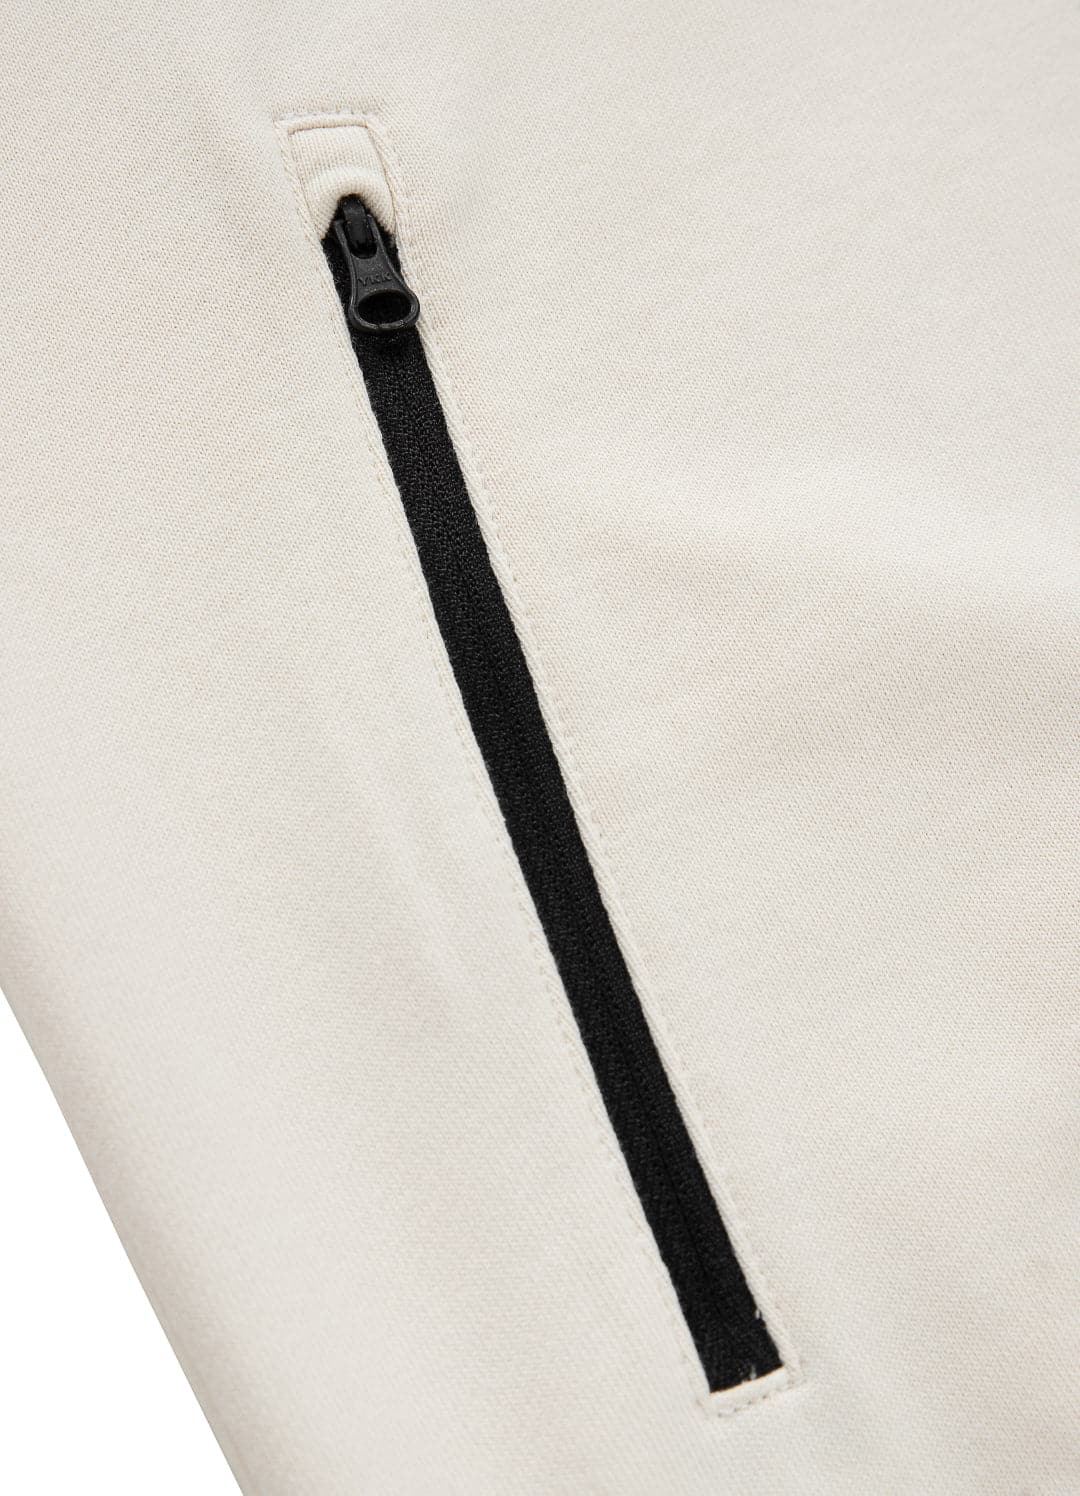 Bluza rozpinana z kapturem TERRY NEW LOGO Jasny Beż - Pitbull West Coast International Store 